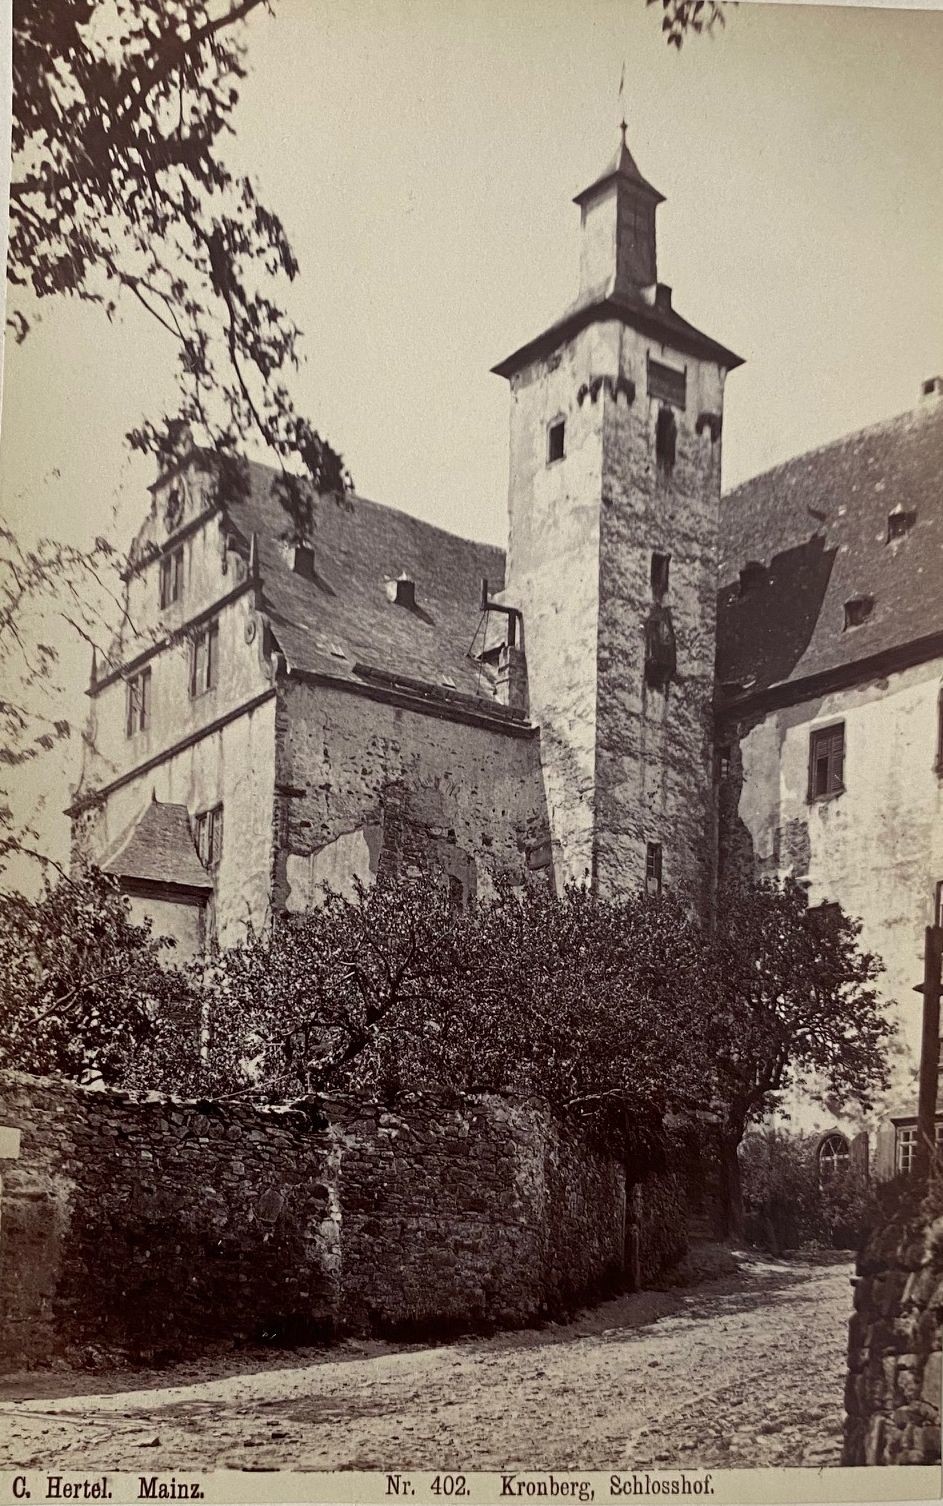 Fotografie, Carl Hertel No. 402, Kronberg, Schlosshof, ca. 1885 (Taunus-Rhein-Main - Regionalgeschichtliche Sammlung Dr. Stefan Naas CC BY-NC-SA)